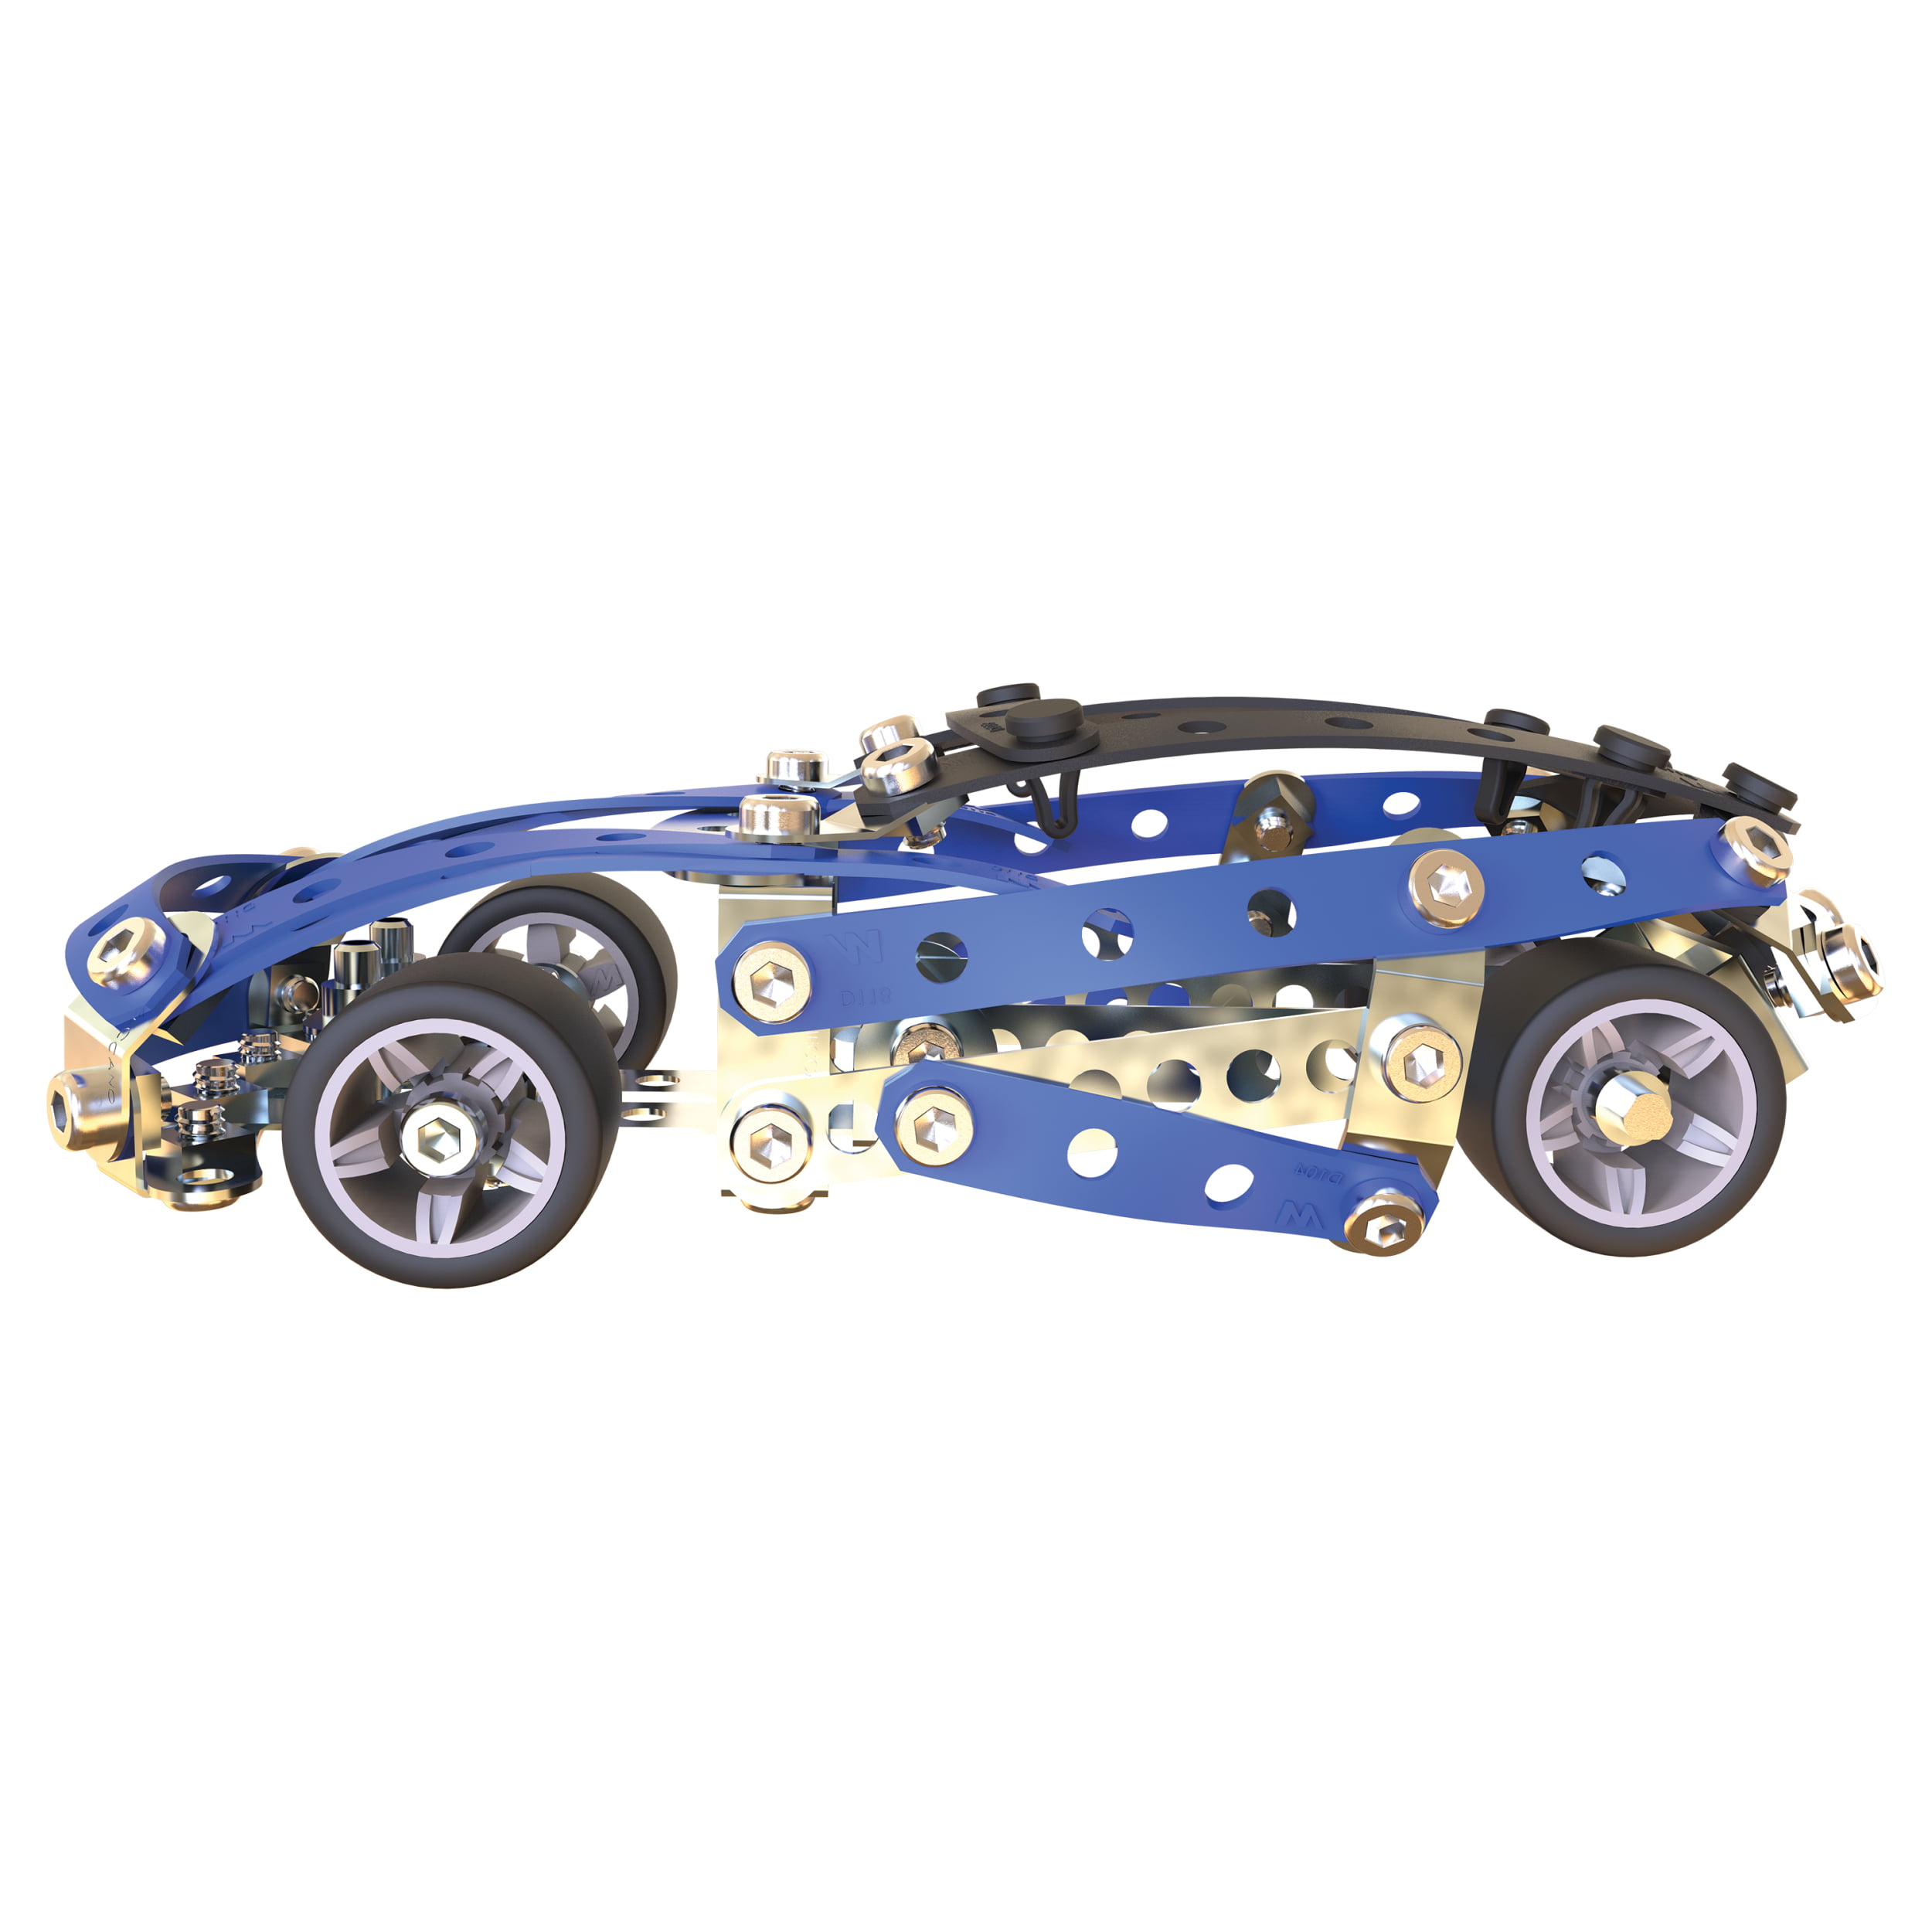  Meccano Erector Roadster - Kit de construcción 5 en 1, 174  piezas, juguete educativo de ingeniería STEM para edades de 8 años en  adelante : Juguetes y Juegos